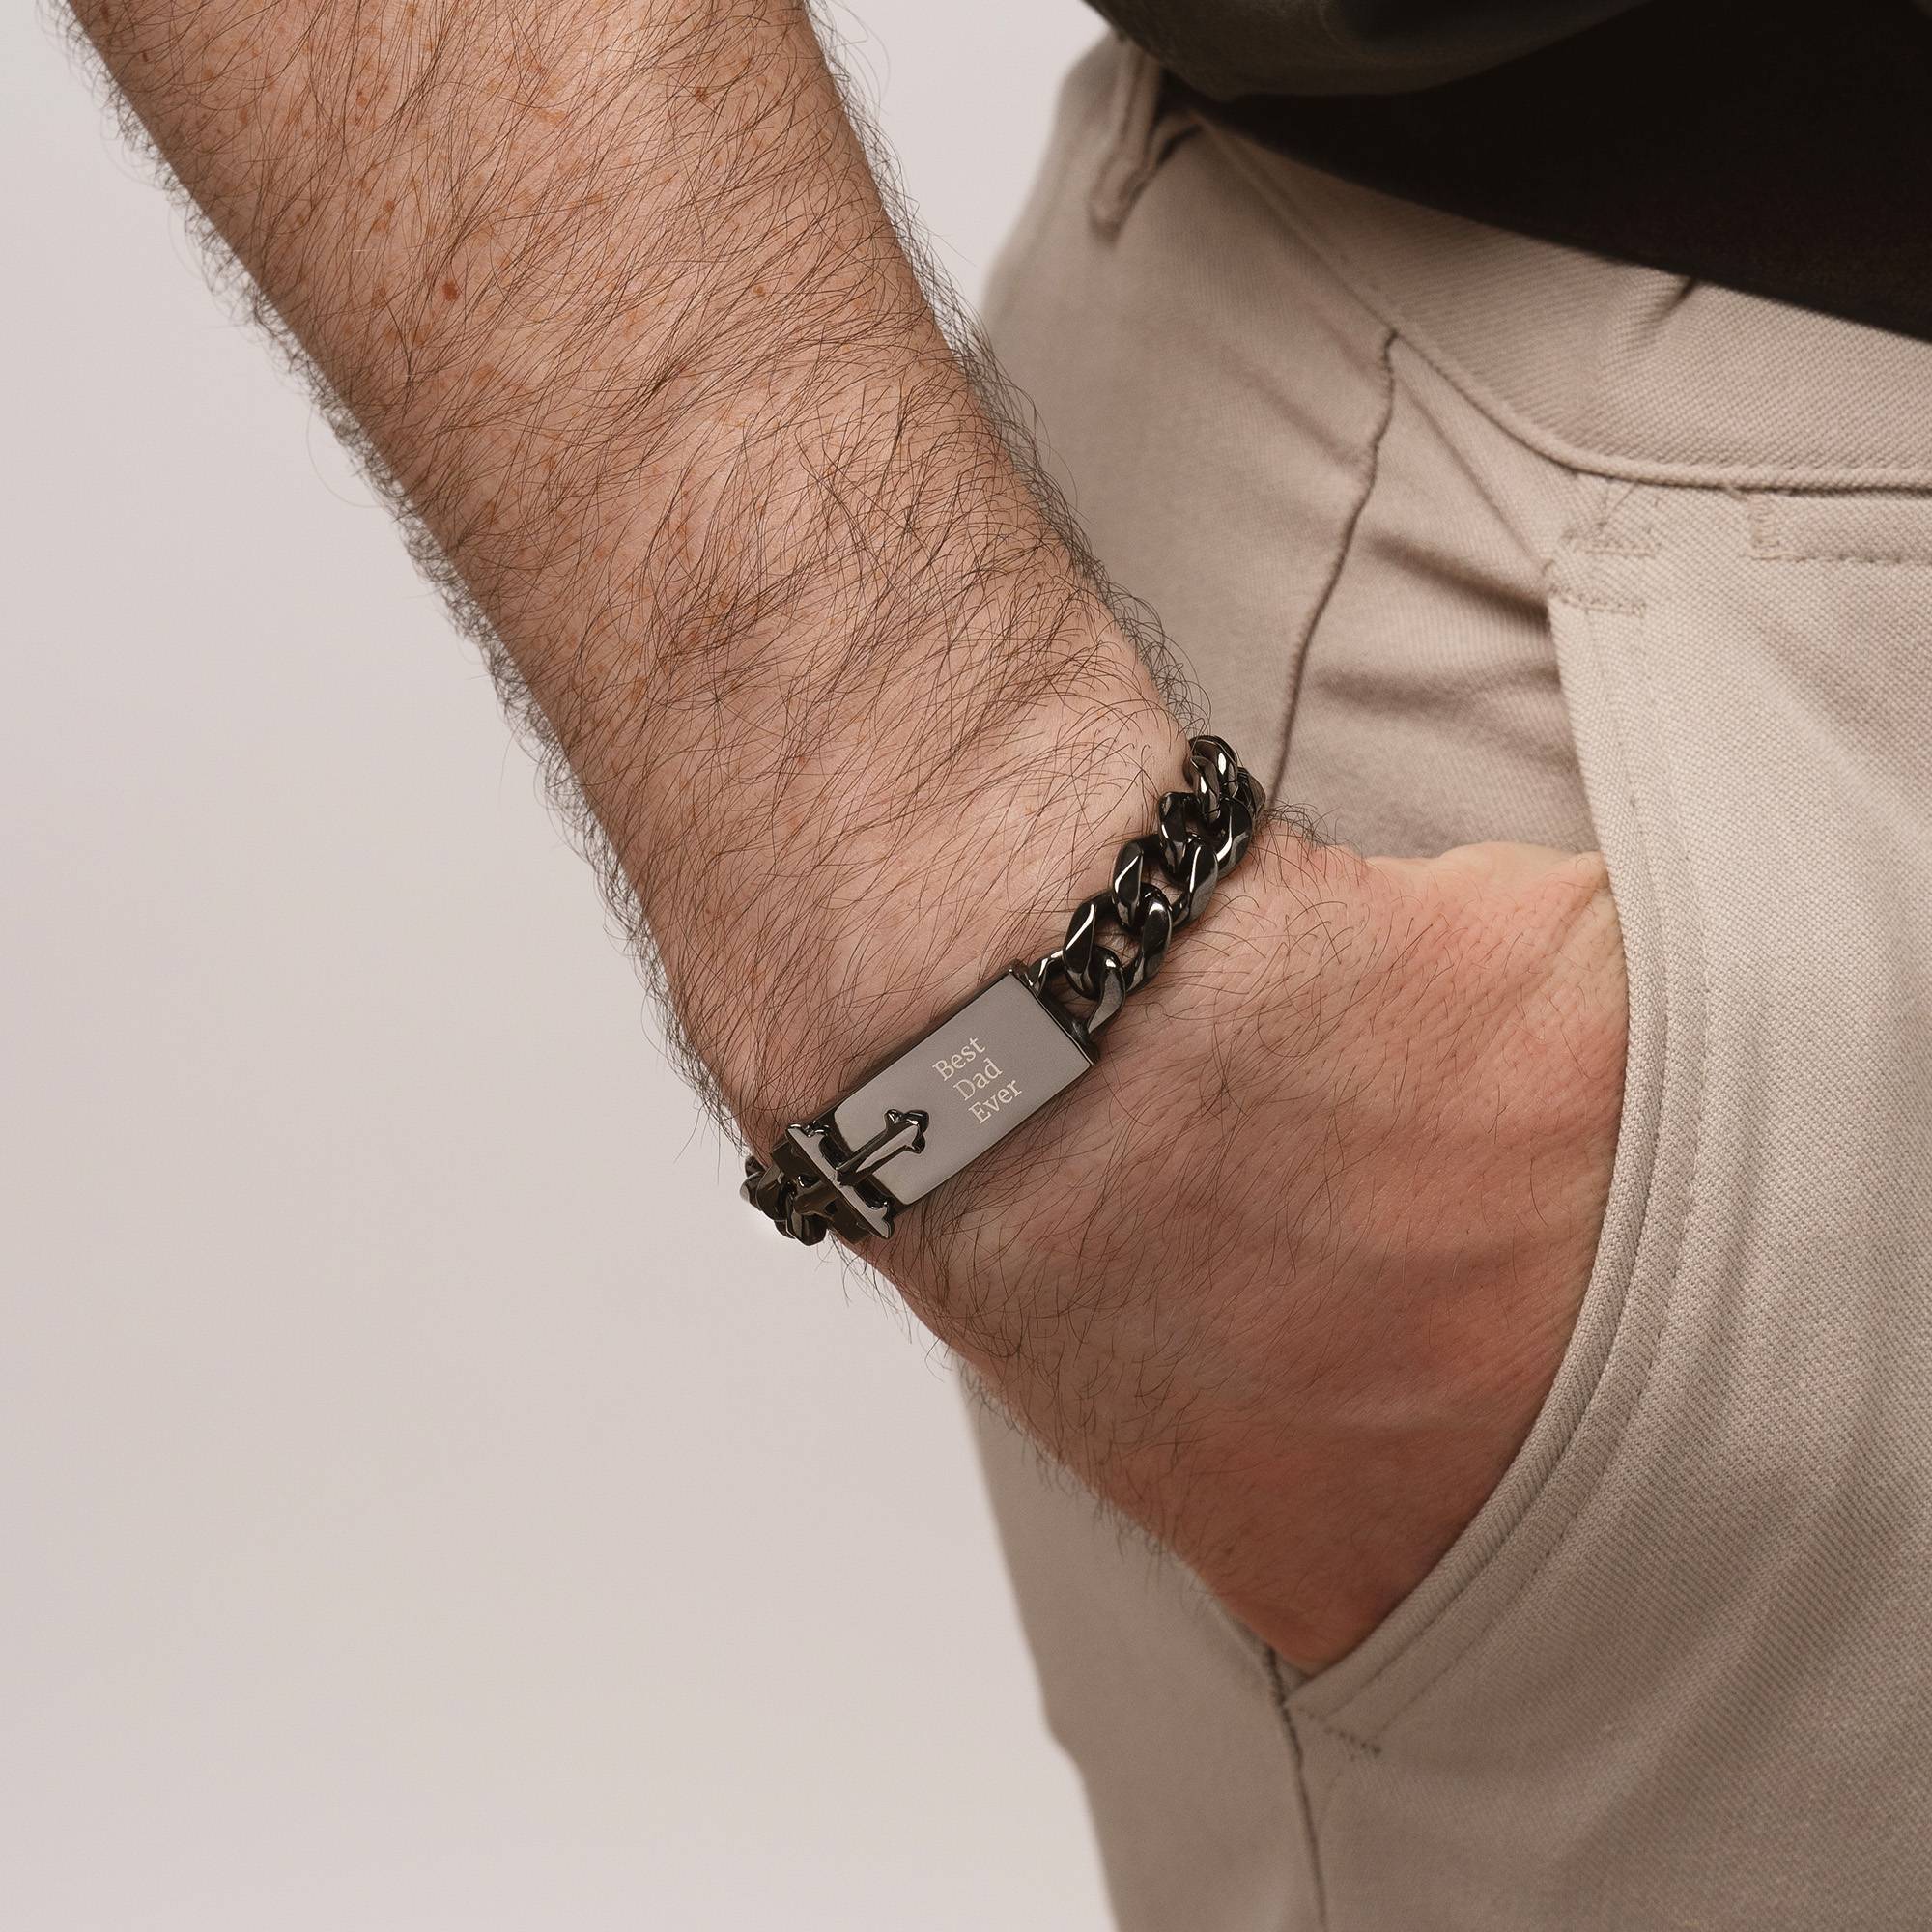 Gepersonaliseerde Kruis ID Armband voor Mannen in Donkergrijs Metaal-4 Productfoto